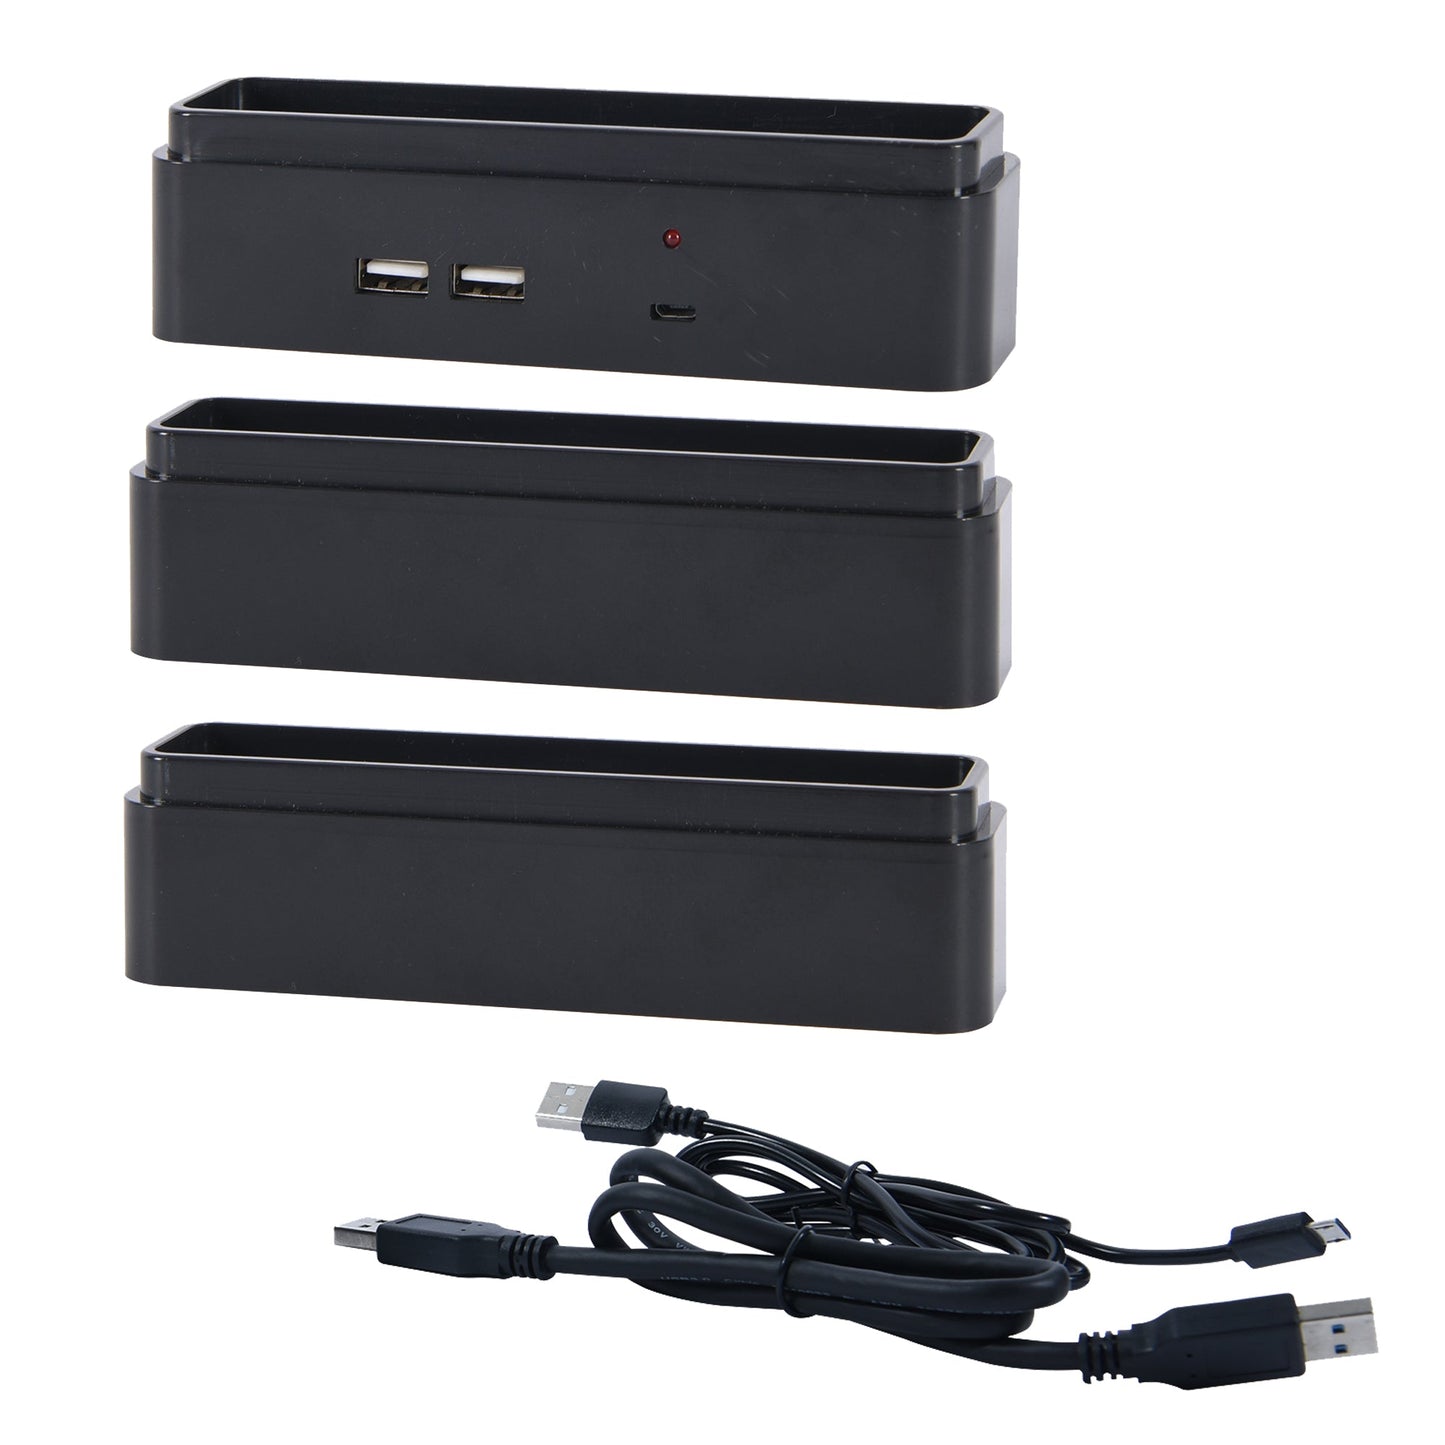 Kit de bloc de montage pour moniteur DAC® Stax MP-232 avec 2 ports de chargement USB